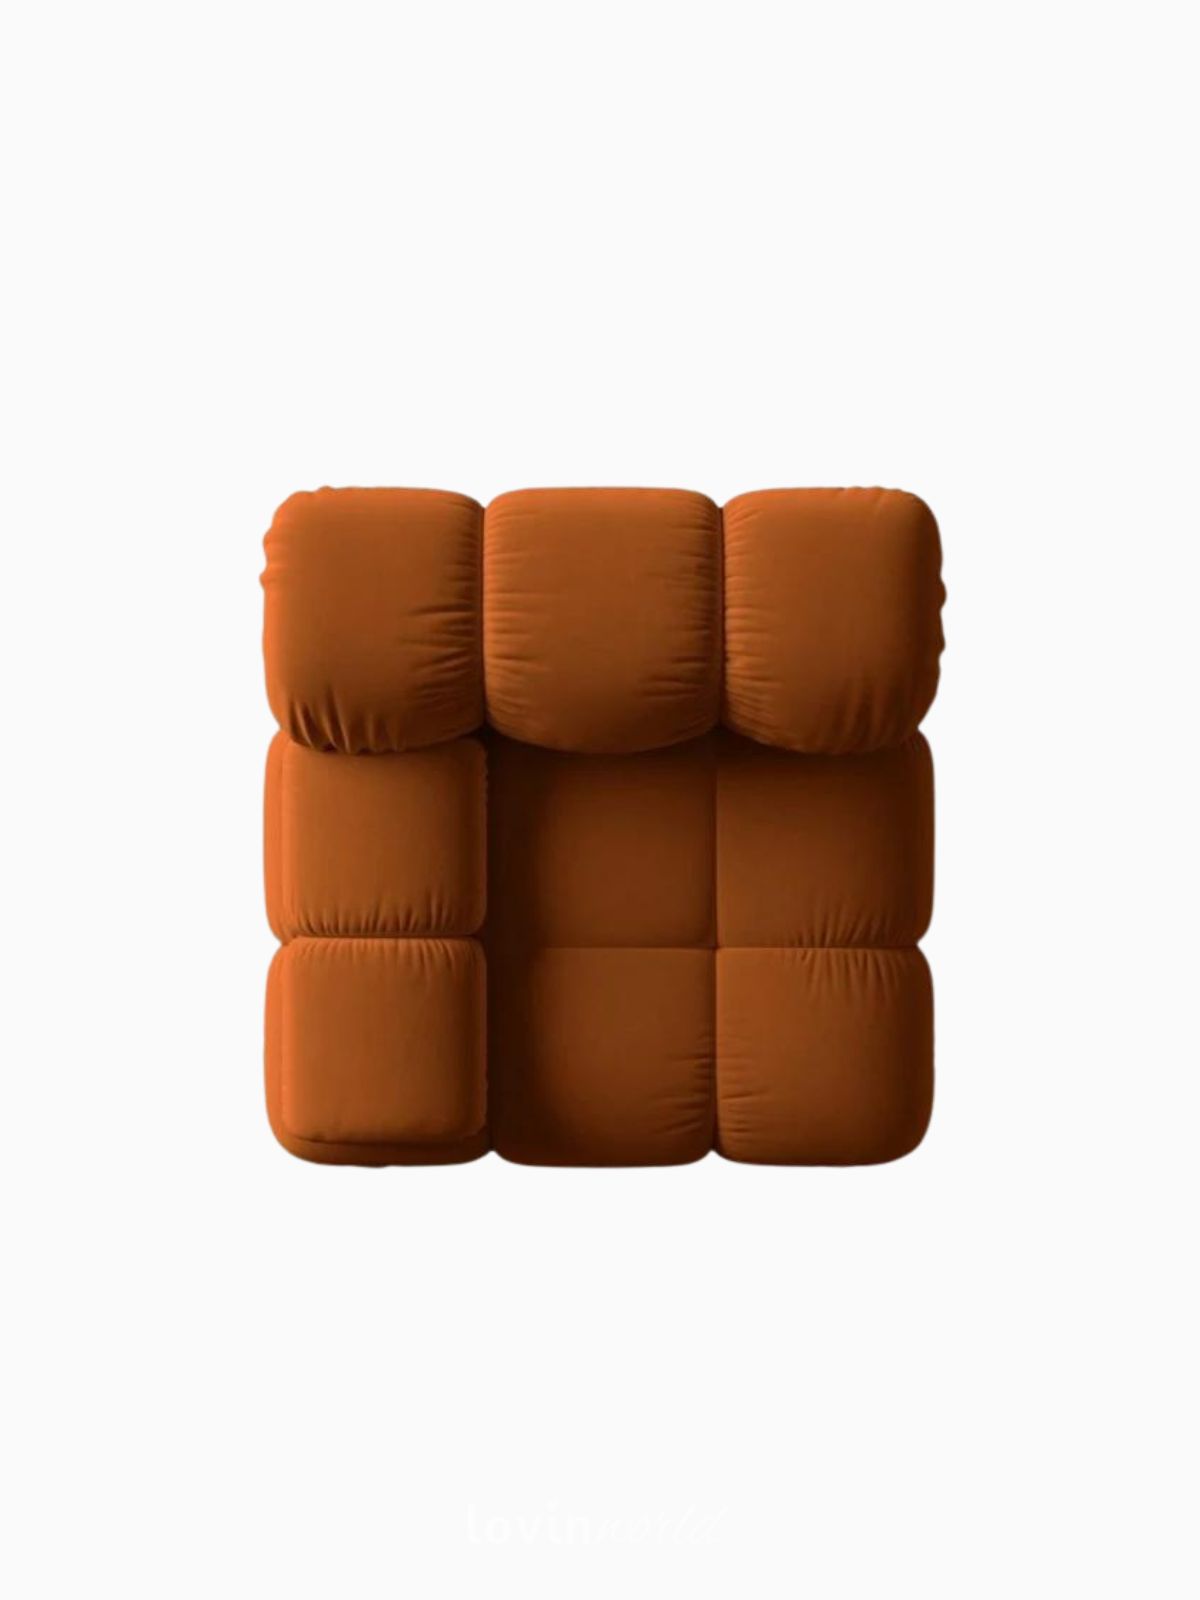 Divano modulare Bellis in velluto, colore arancione-5